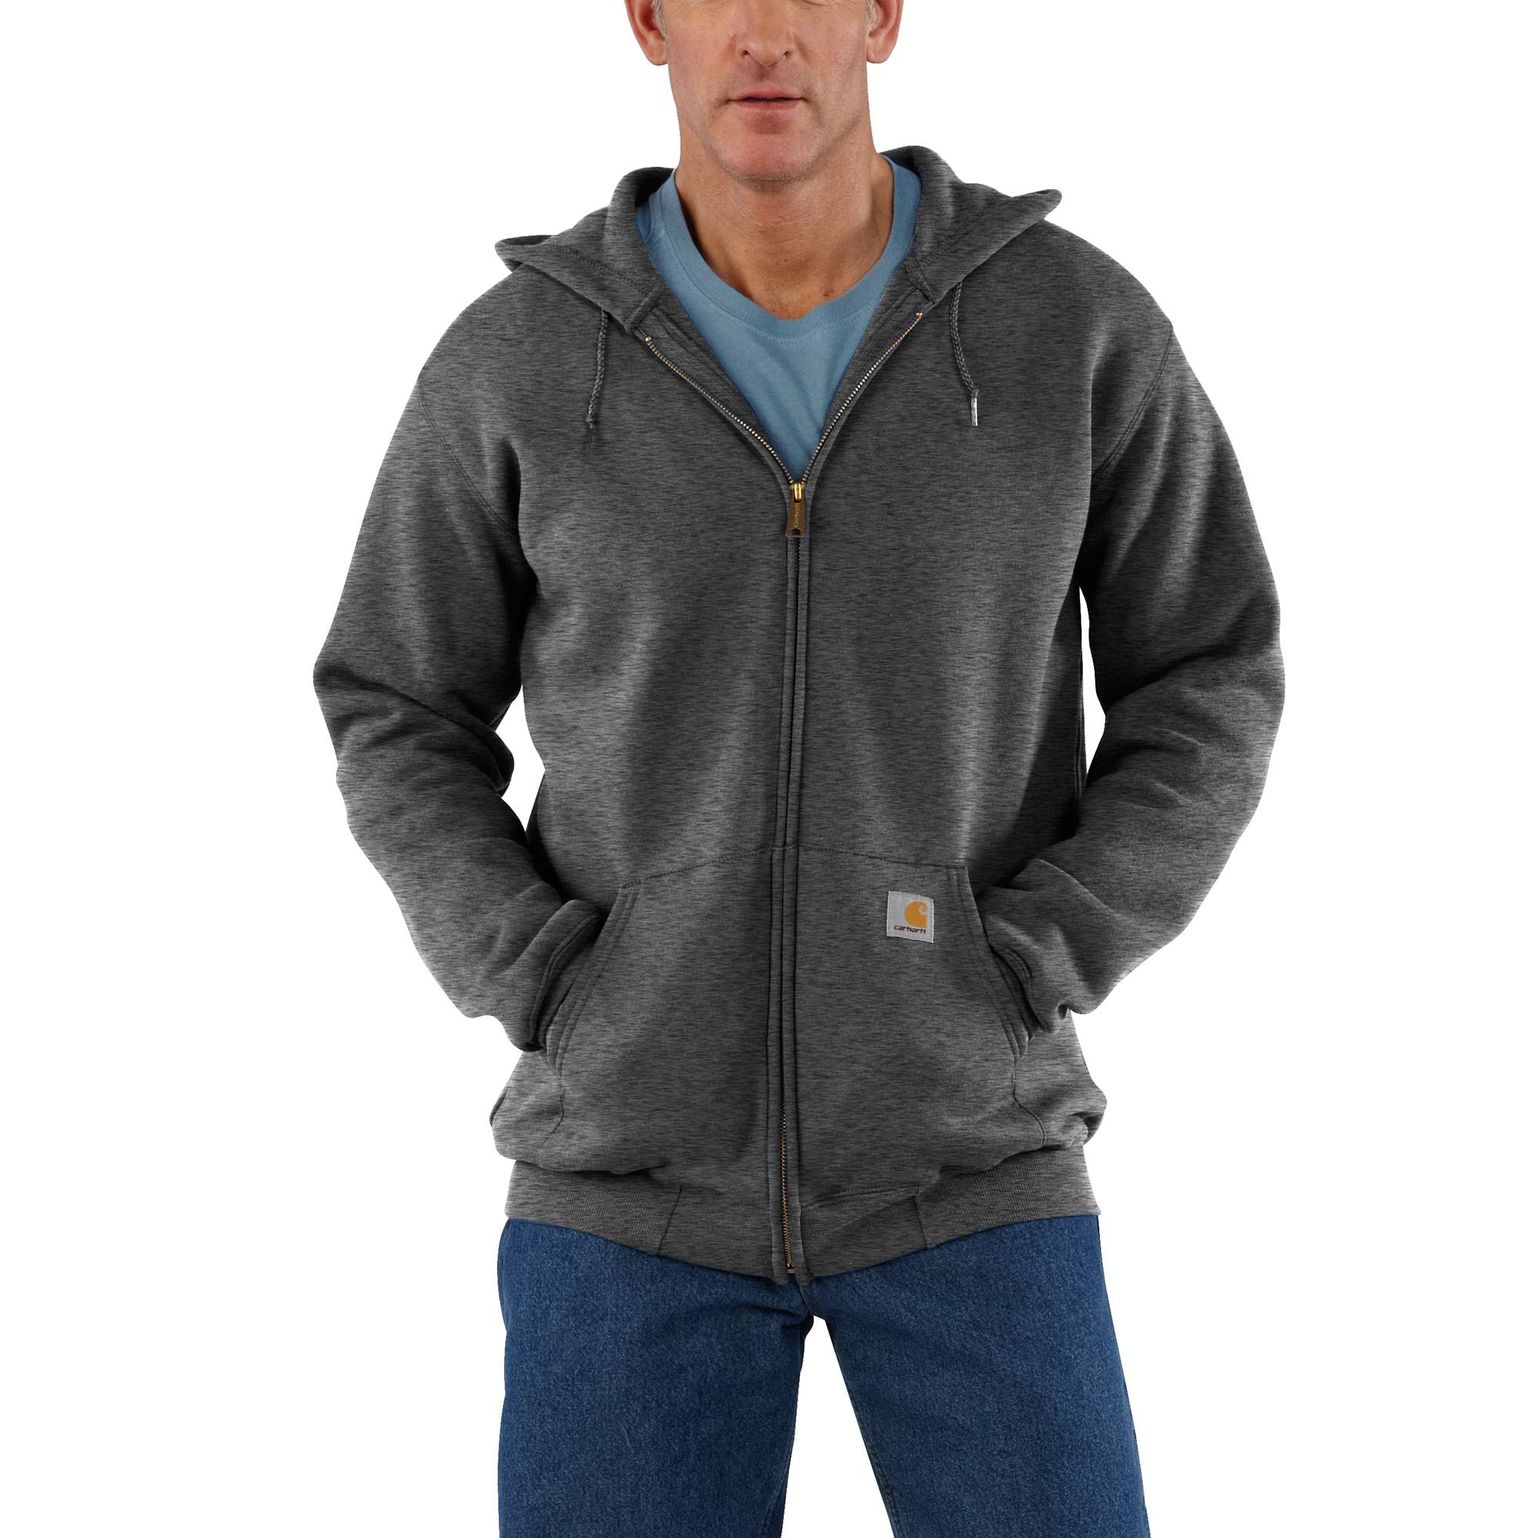 Men's Zip Hooded Sweatshirt Carbon Heather